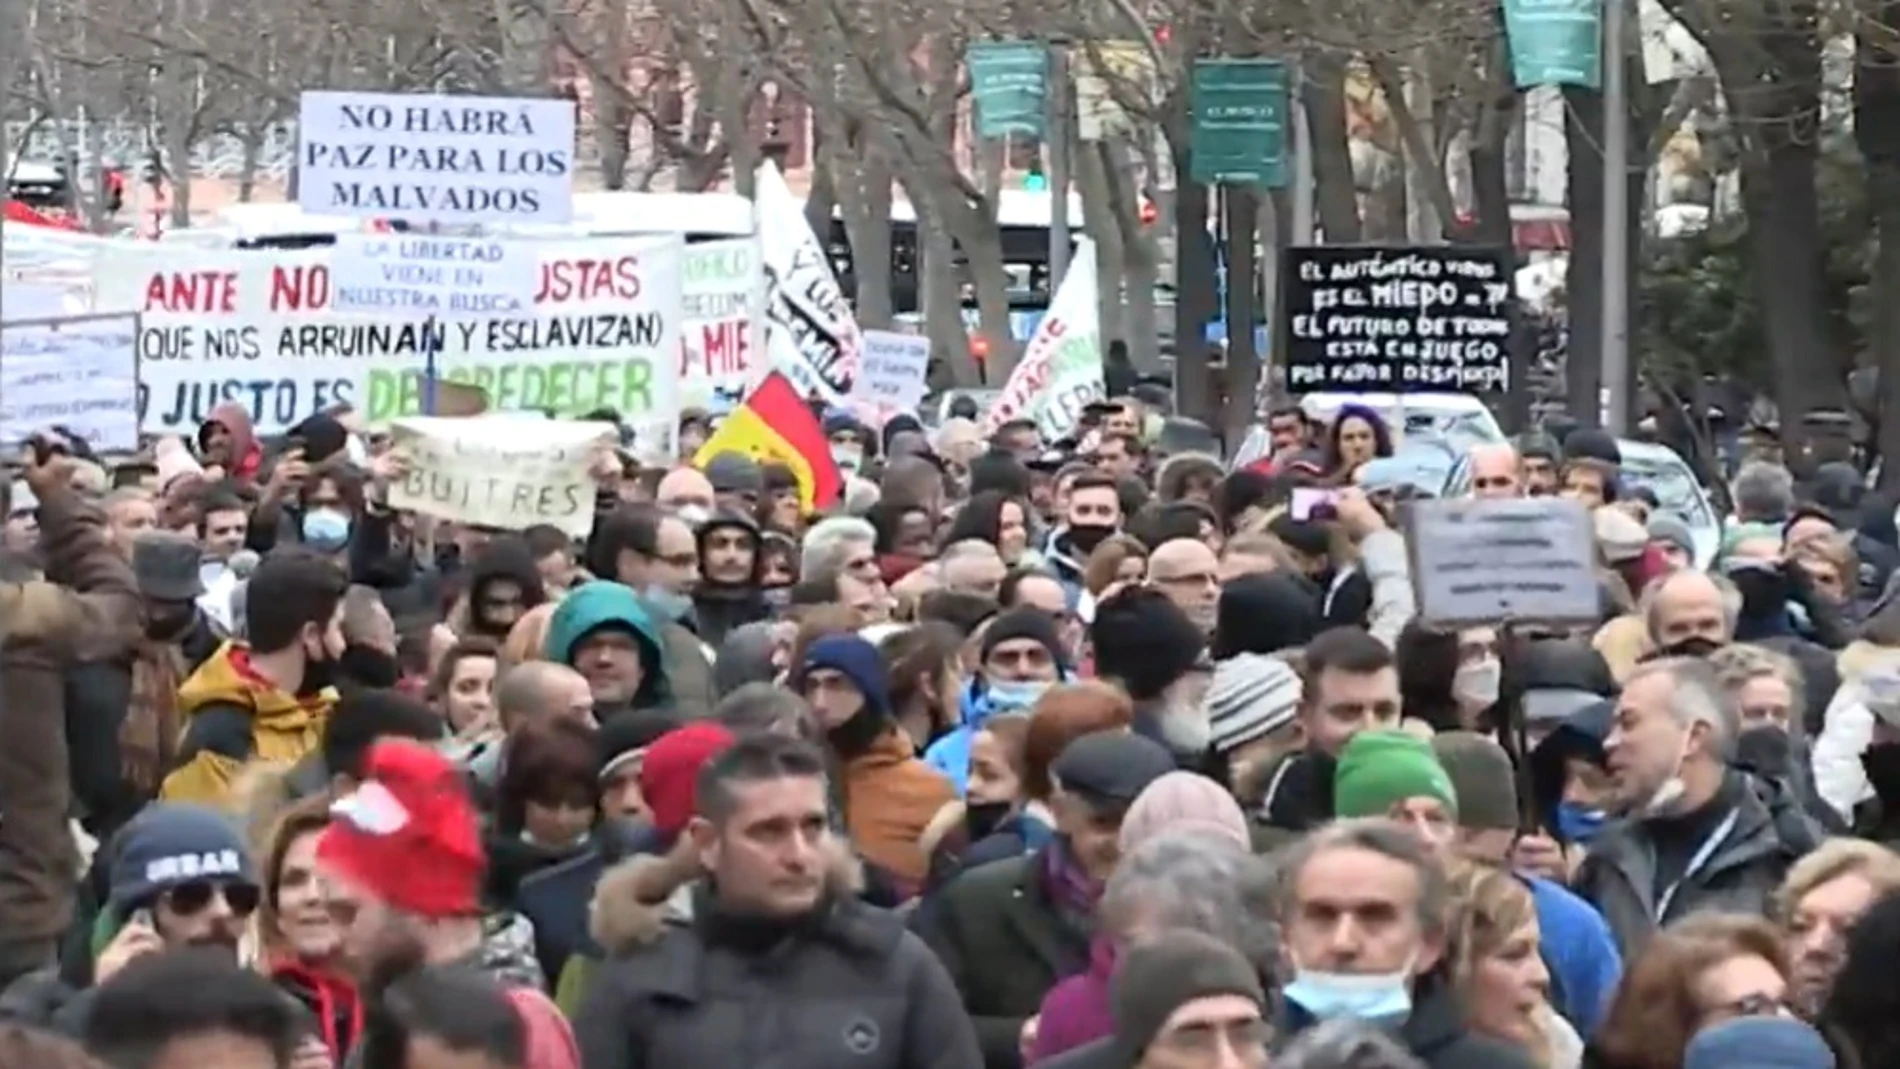 Imagen de la manifestación negacionista en Madrid